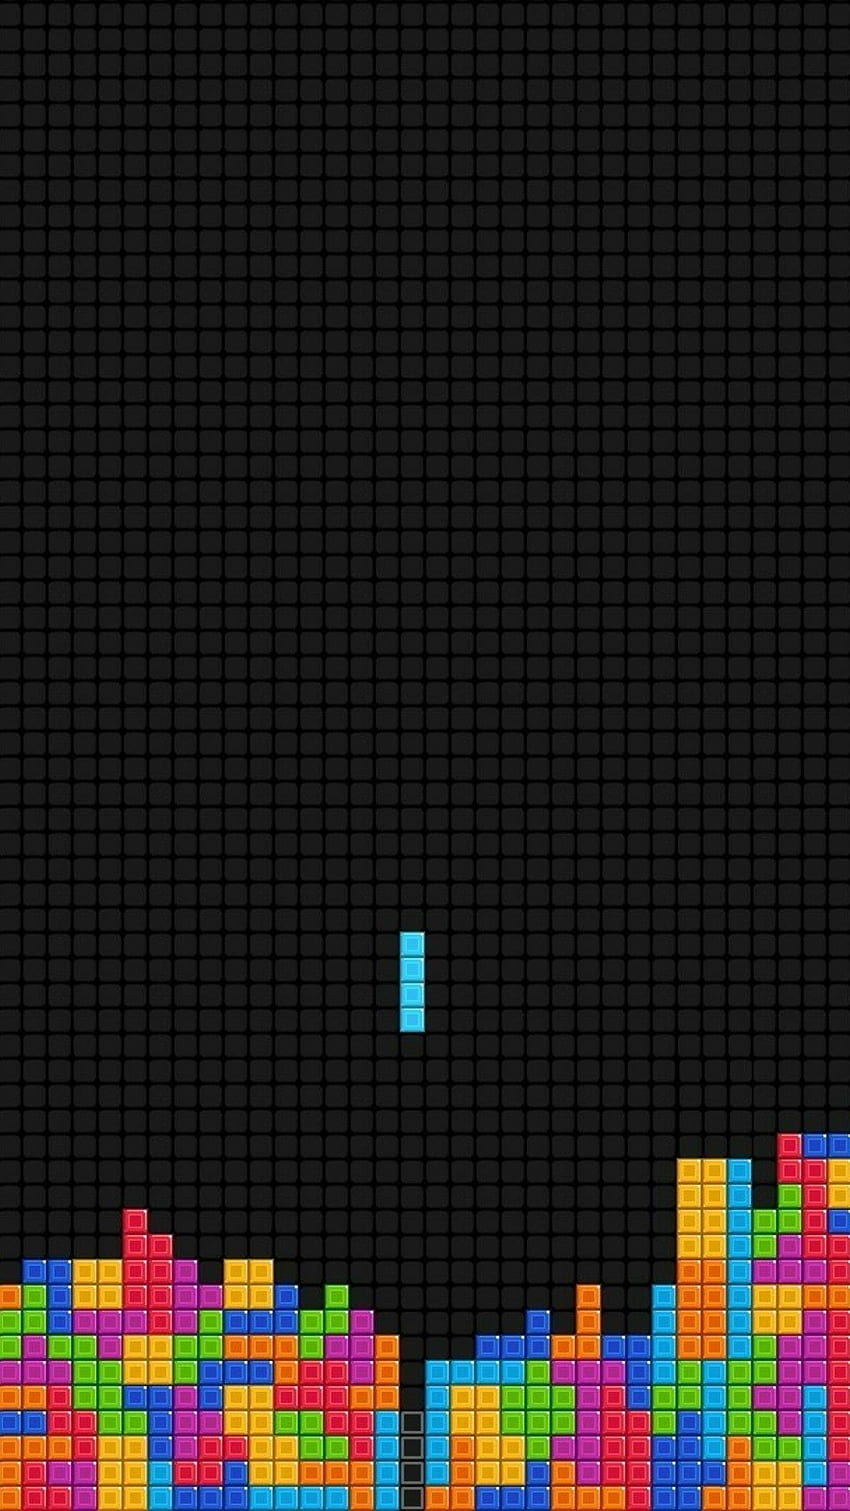 Chào mừng đến với vũ trụ Tetris đầy màu sắc! Chúng tôi đã tạo ra một bức tranh độc đáo với hình ảnh lô-gic tuyệt đẹp của game Tetris để mang đến cho bạn những giây phút thư giãn và tận hưởng sự tinh túy của tựa game này.